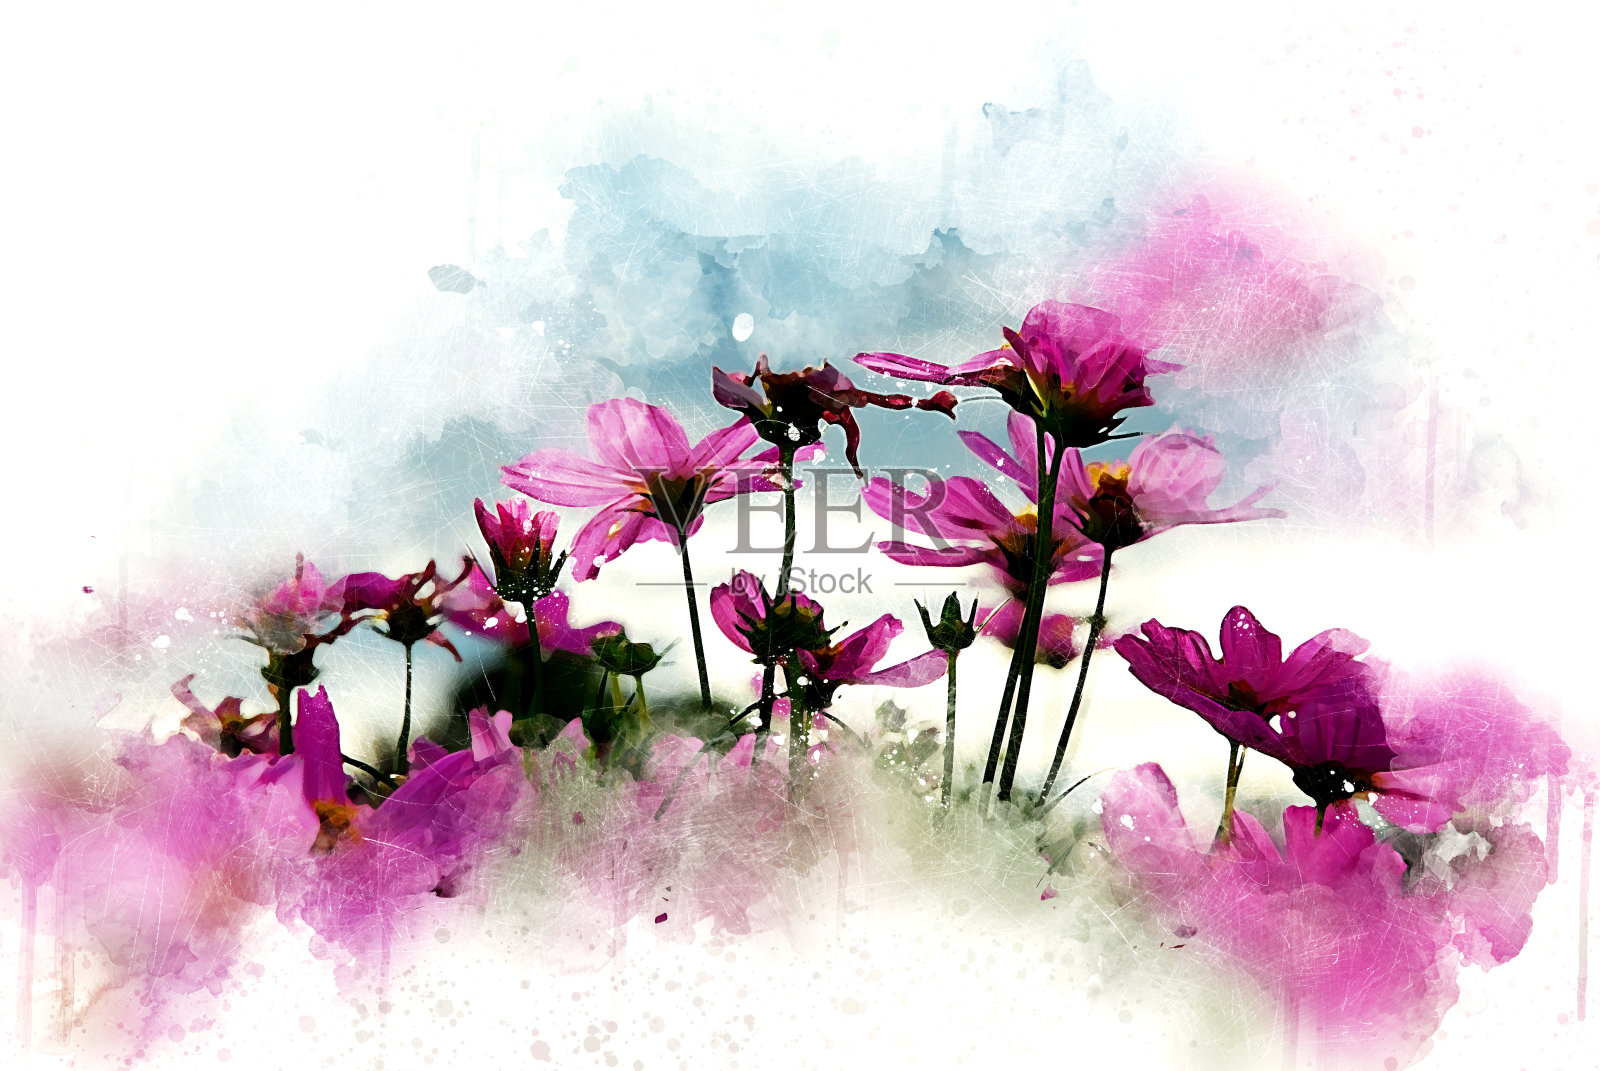 抽象的粉红色花朵盛开在彩色水彩画的背景和数字插图画笔艺术。插画图片素材